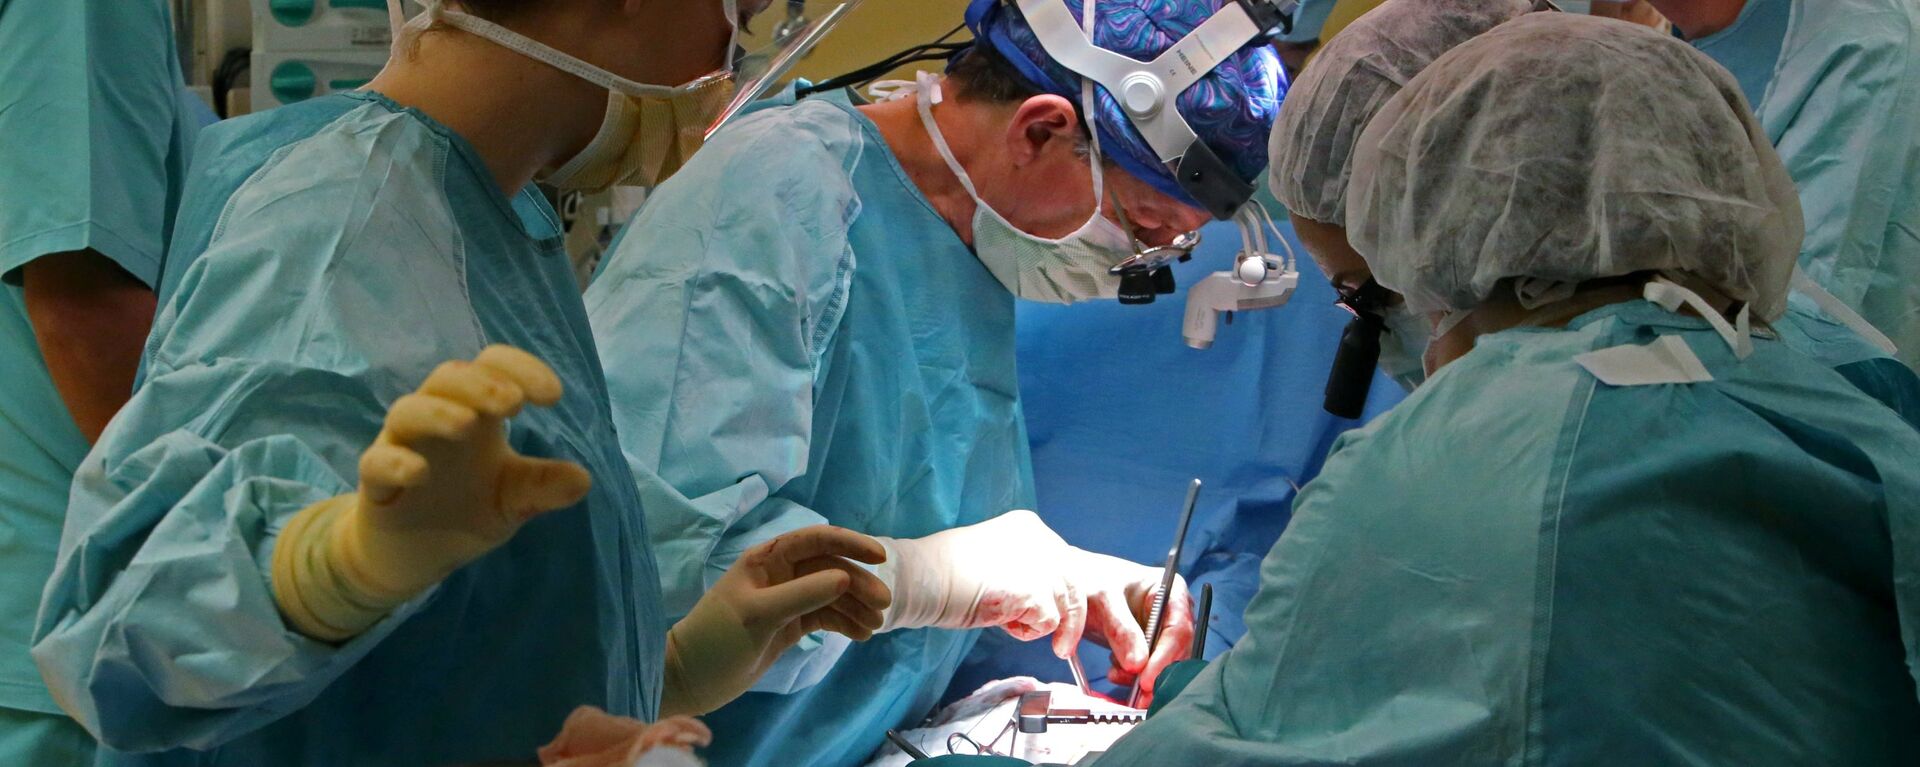 Операция на открытом сердце в Калининградском Центре сердечно-сосудистой хирургии - Sputnik Абхазия, 1920, 04.12.2021